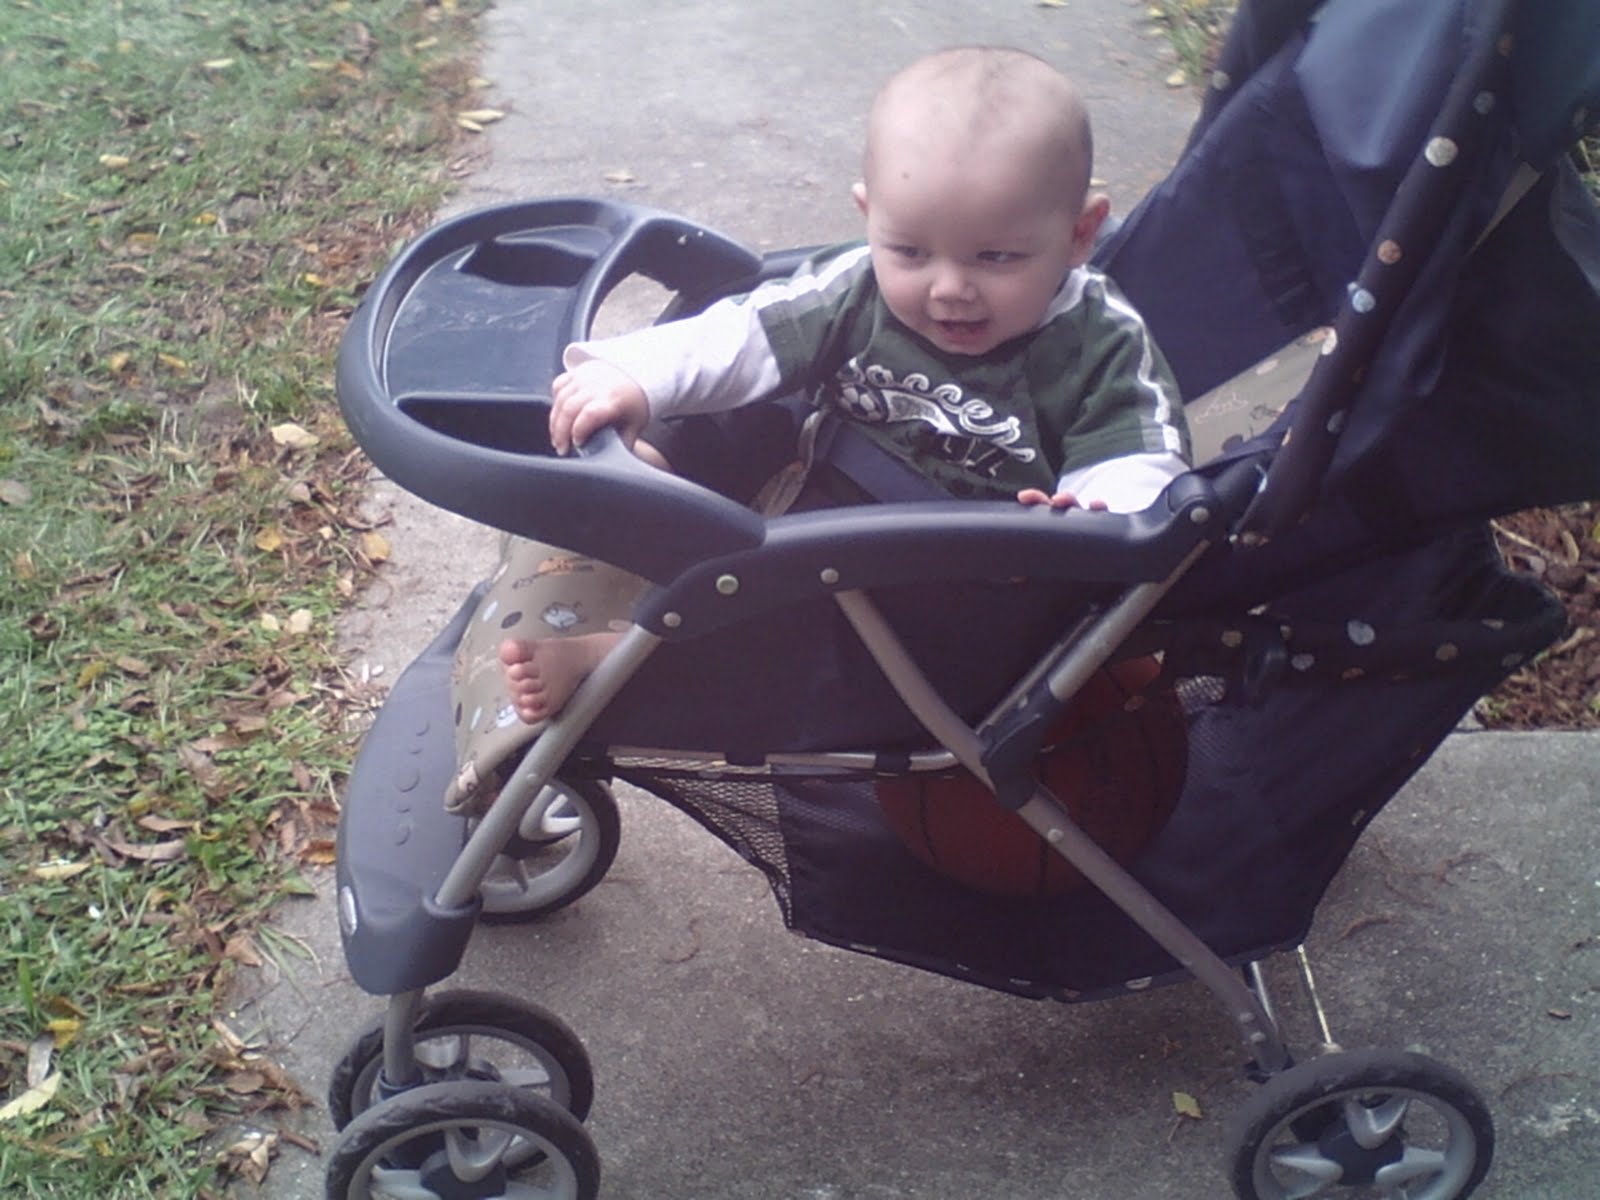 Babies like stroller walks